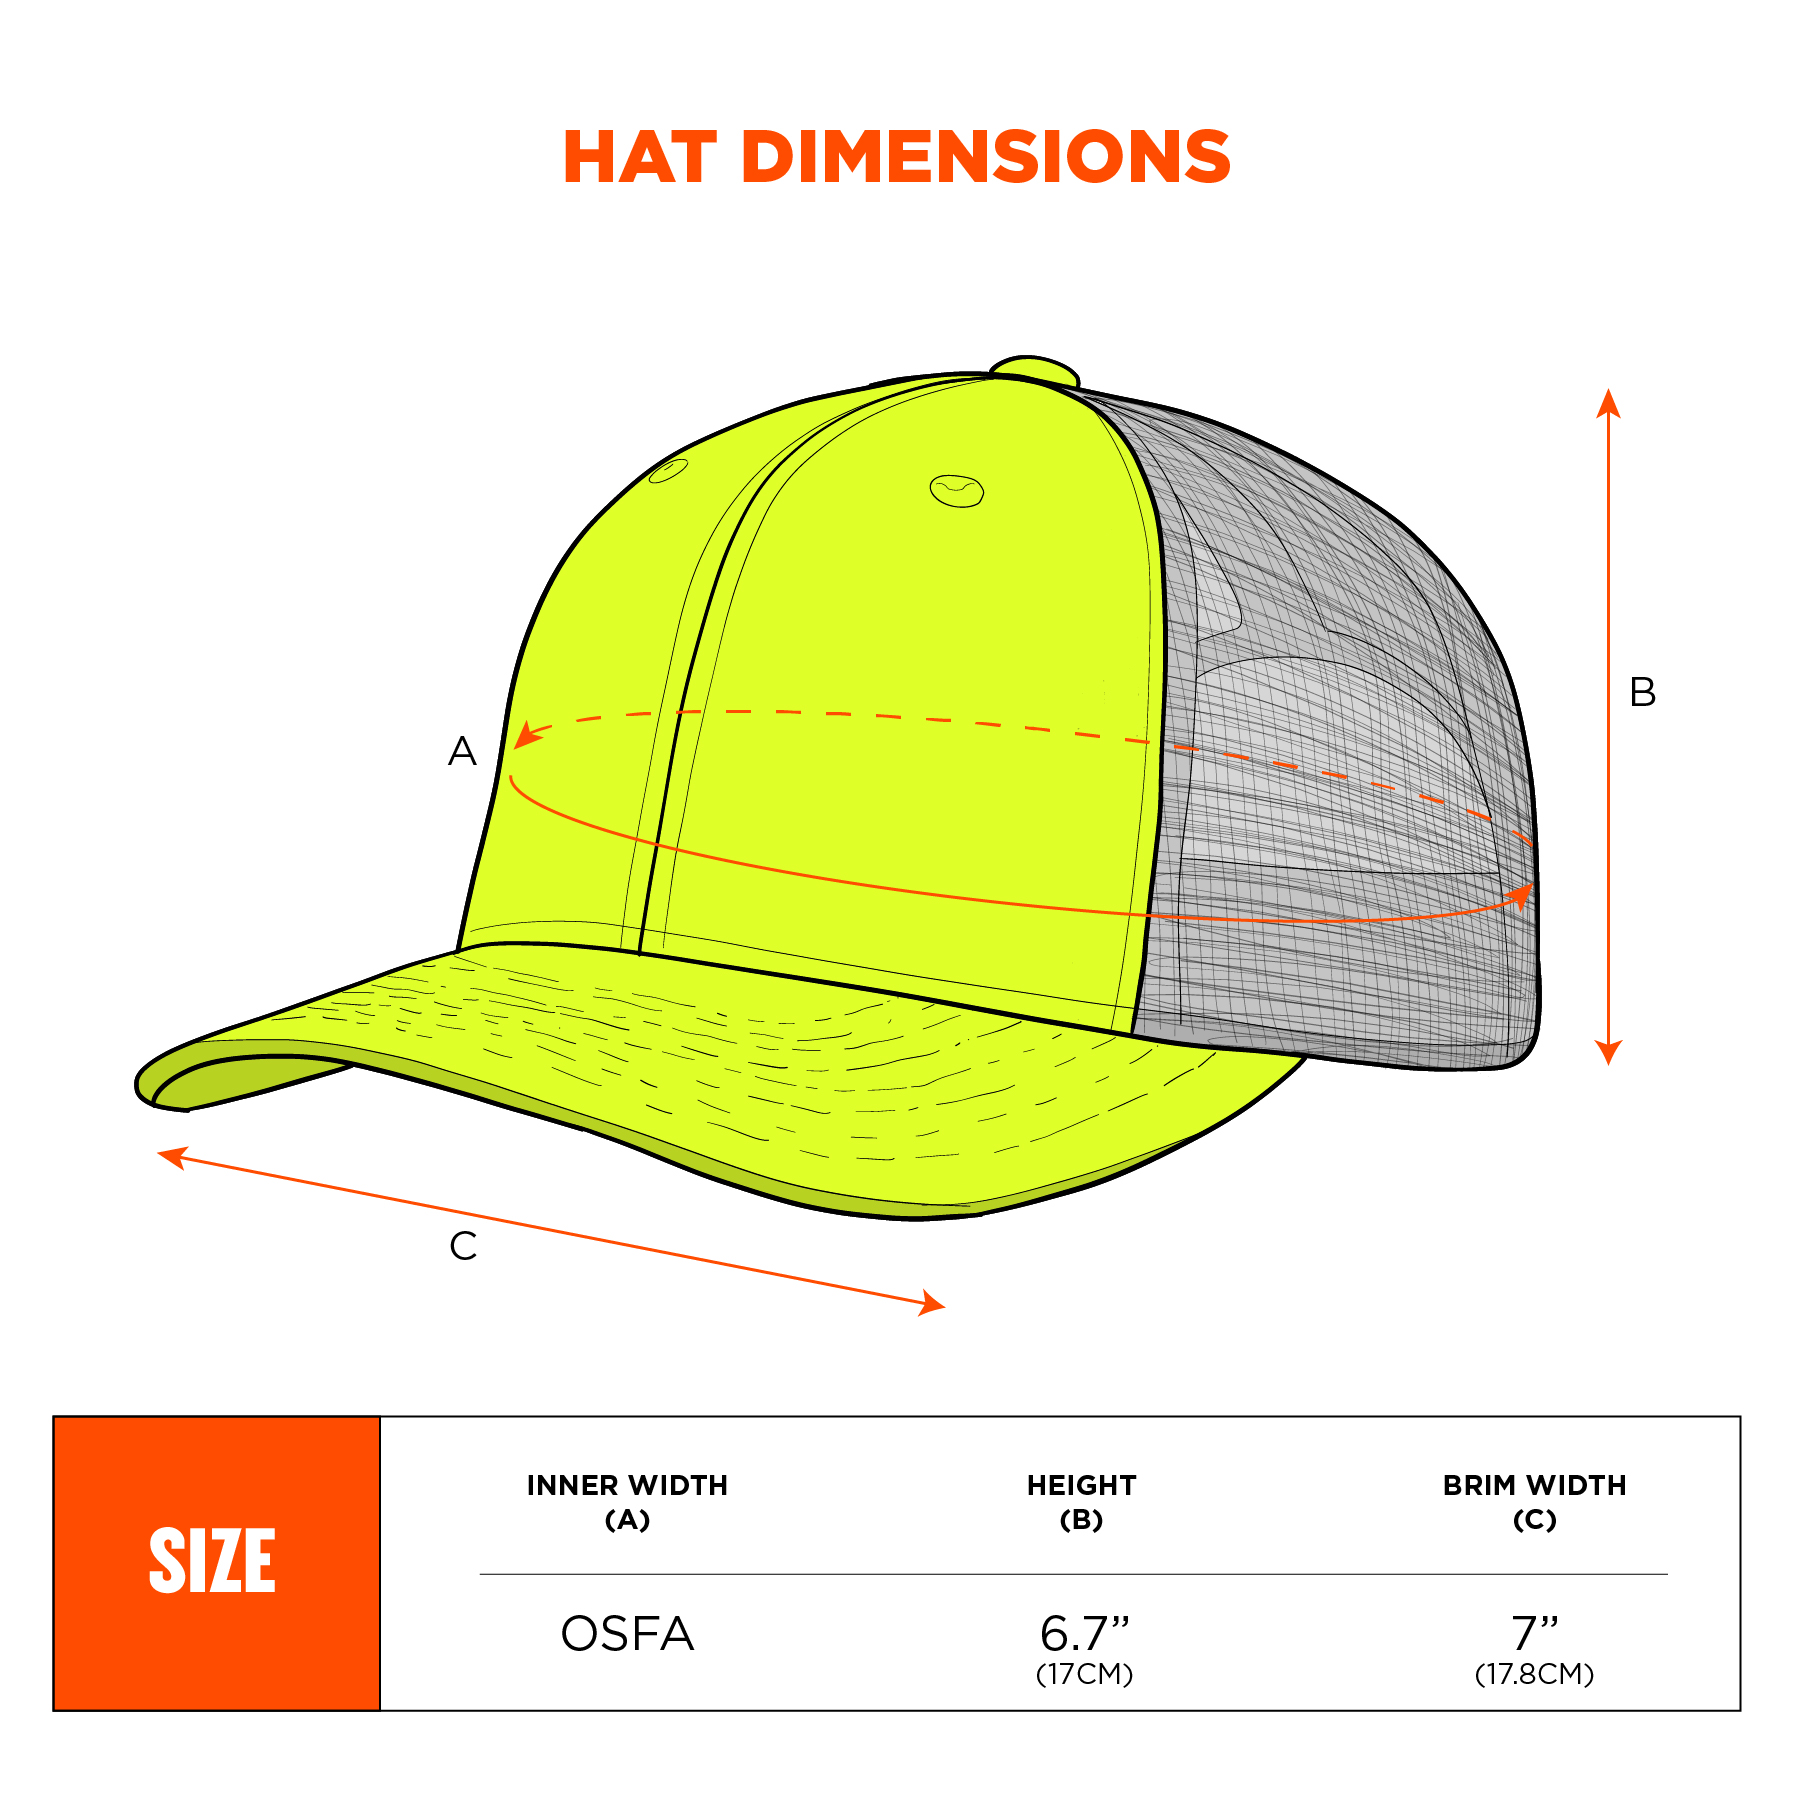 Meenemen Hoofd vermomming Hi-Vis Reflective Snapback Hat | Ergodyne